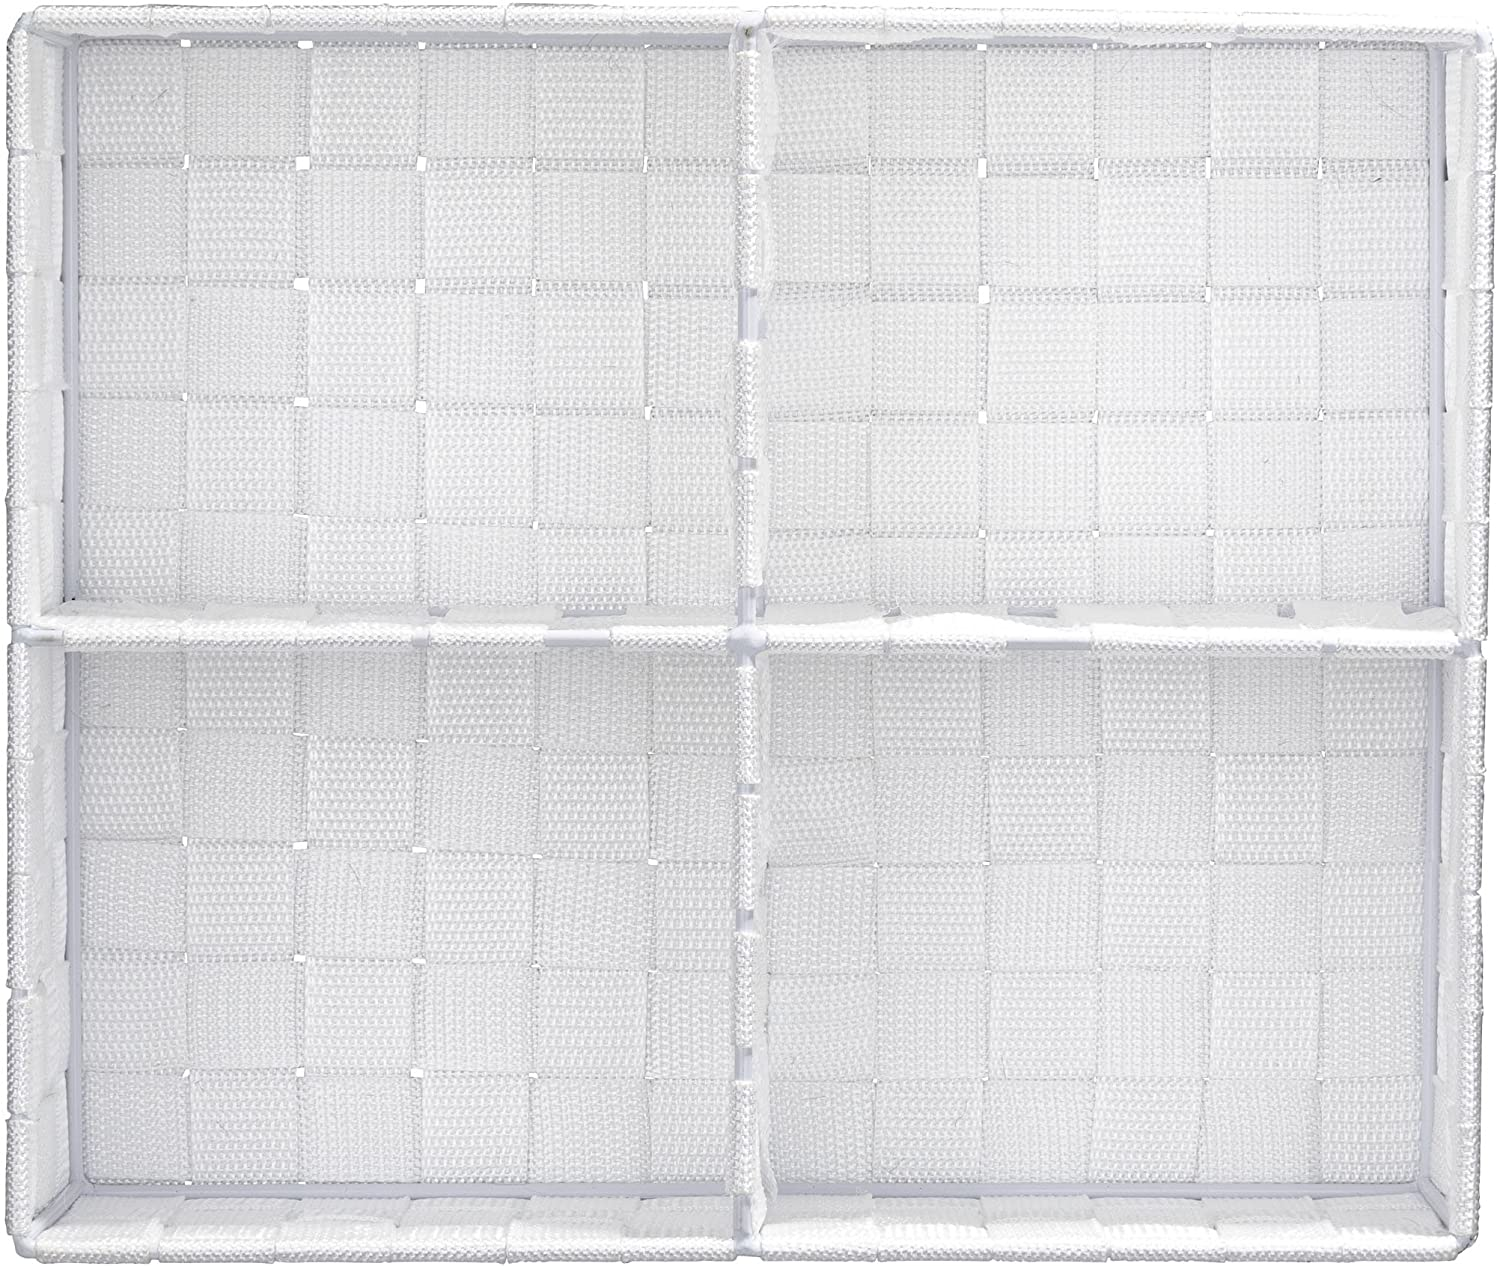 Organizer Adria Quadro Weiß - 4 Fächer, 100 % Polypropylen, 32 x 10 x 27 cm, Weiß